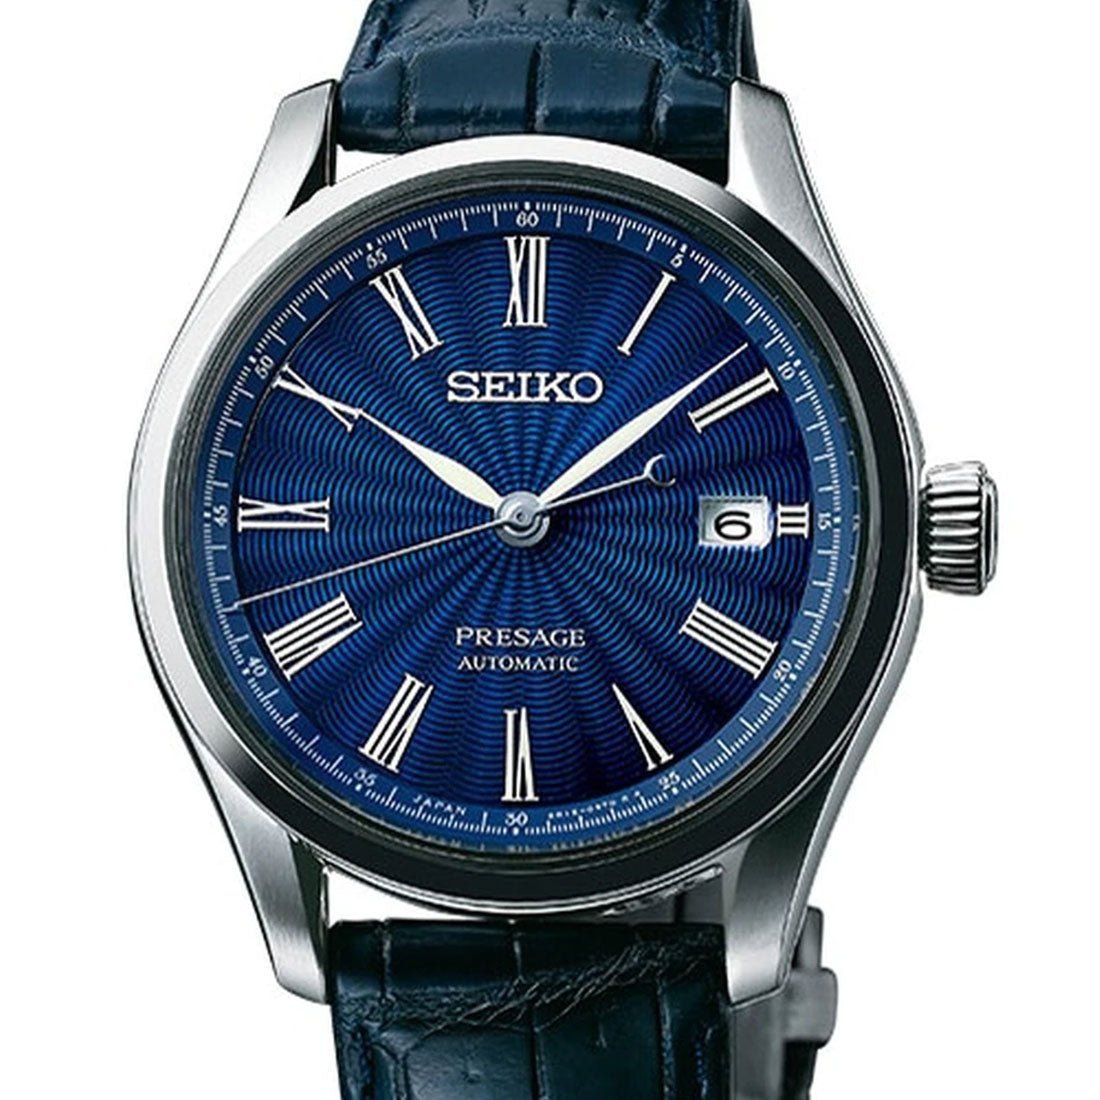 Seiko Presage Automatic Shippo Enamel JDM Watch SARX059 -Seiko